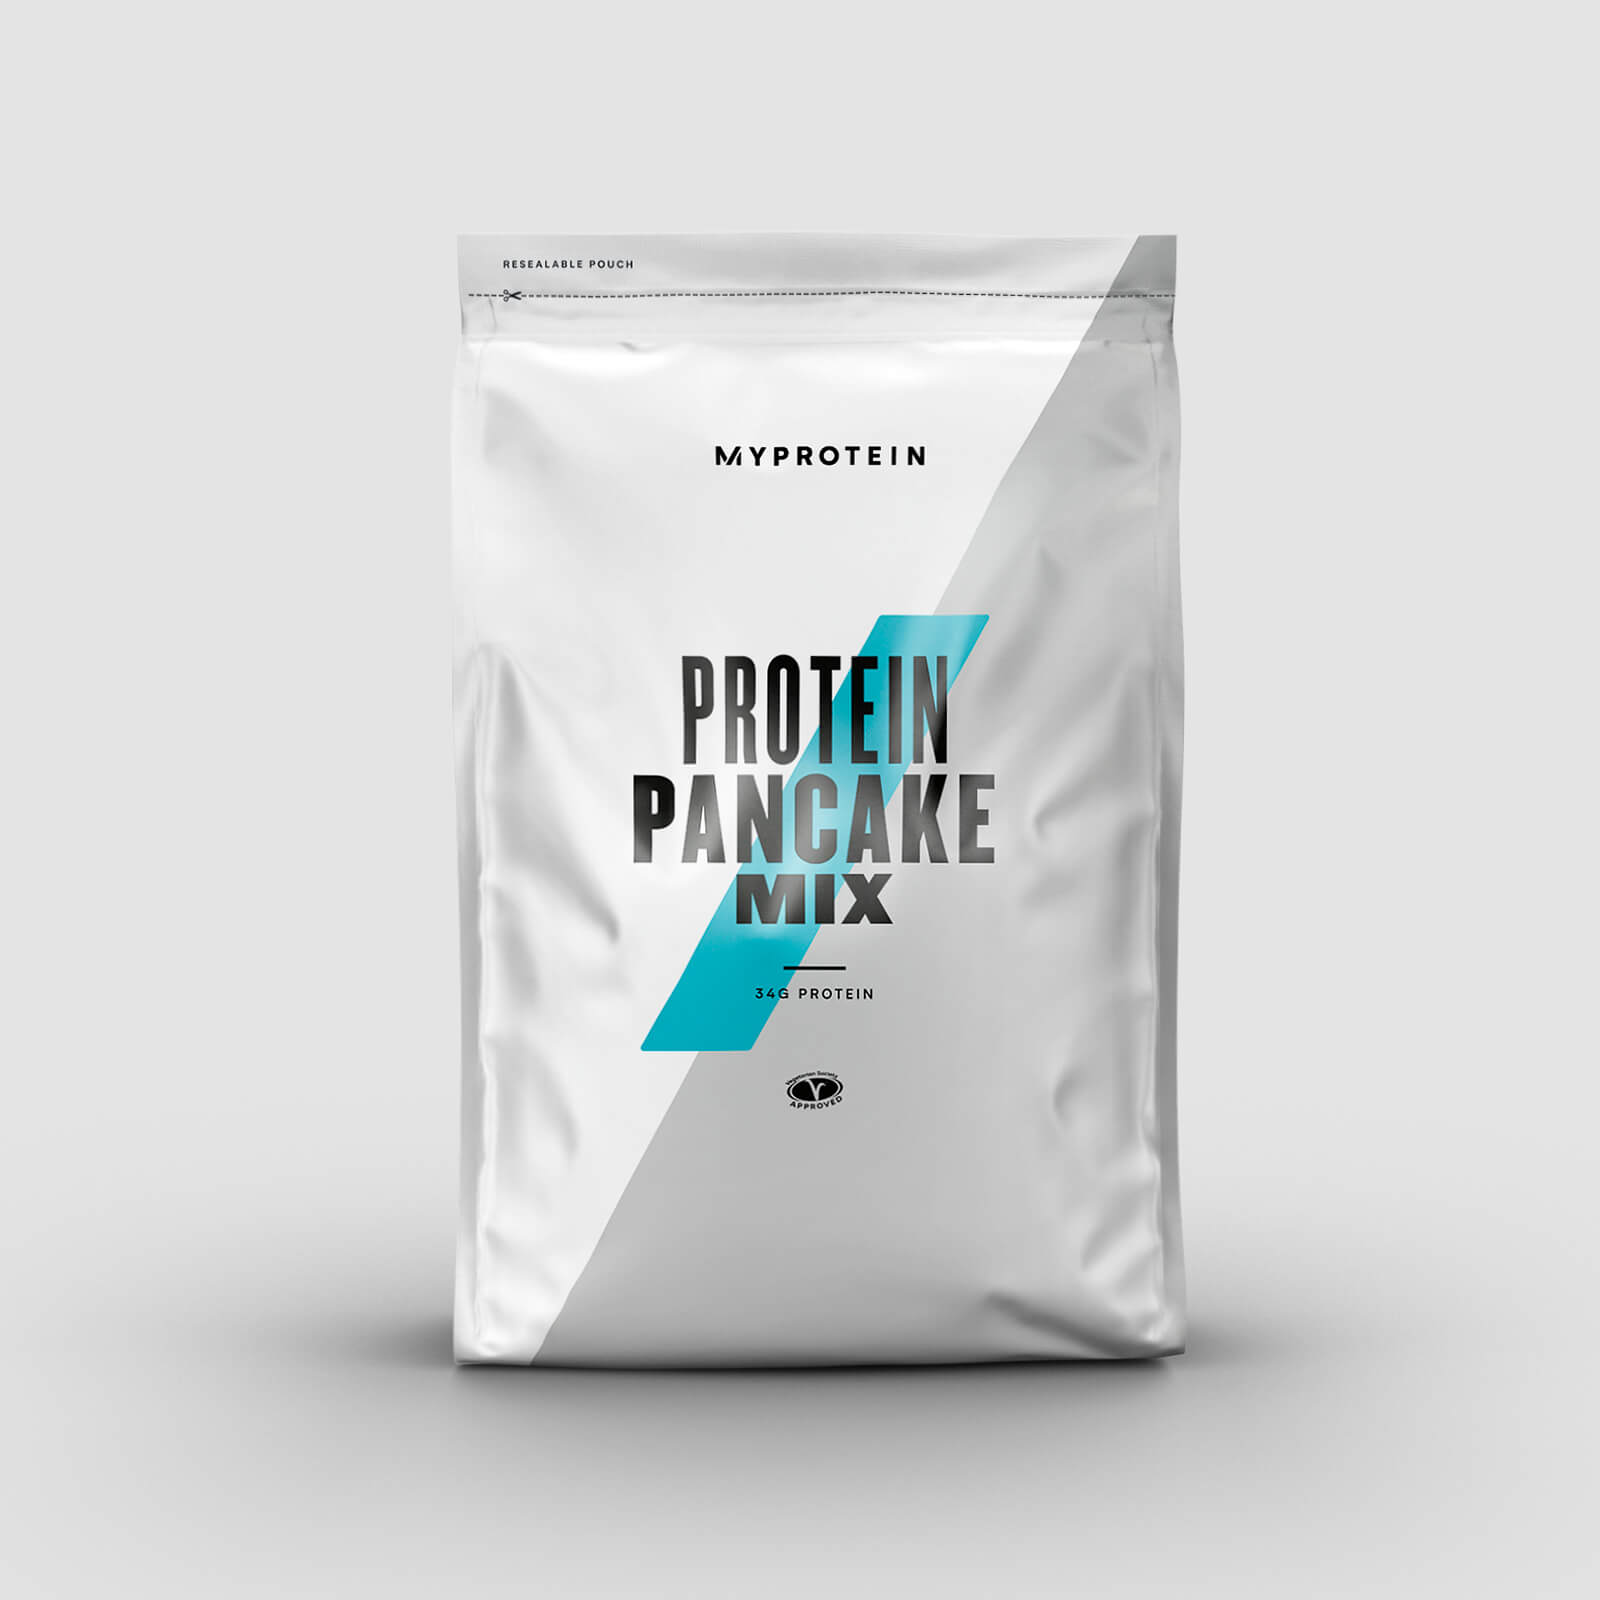 Myprotein Protein Pancake Mix - 200g - Maple Syrup